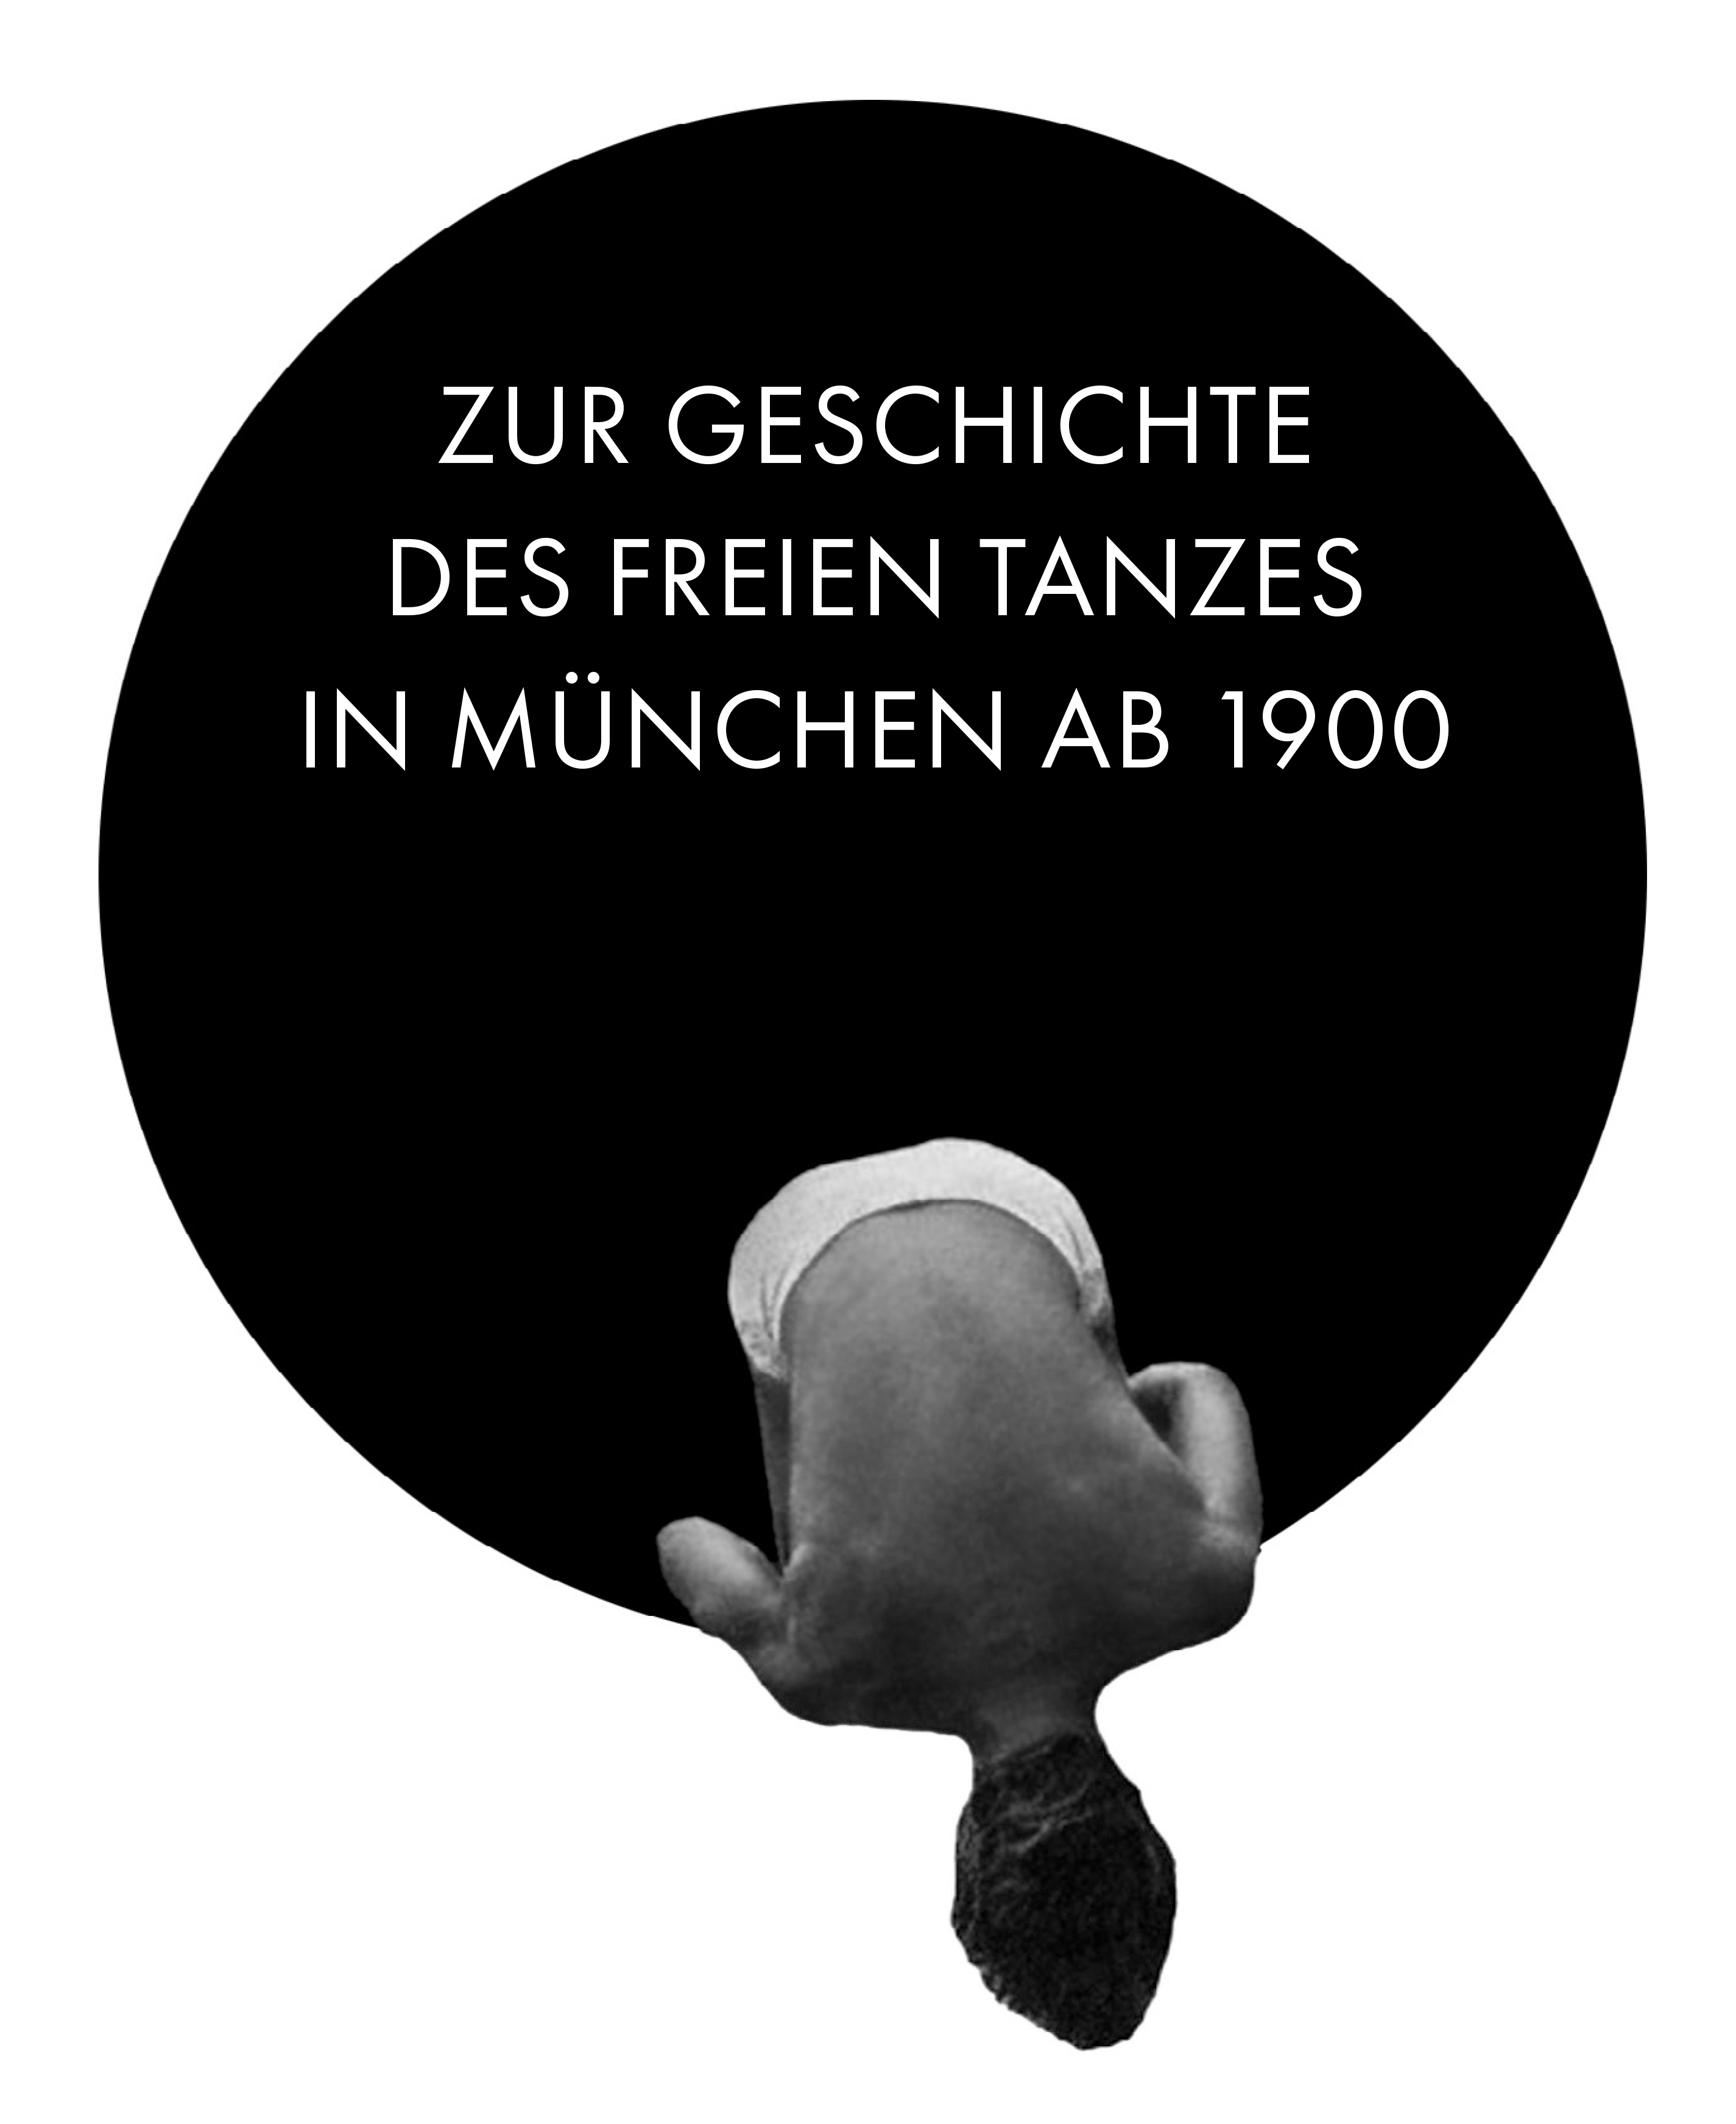 Zur Geschichte  des freien Tanzes  in München ab 1900